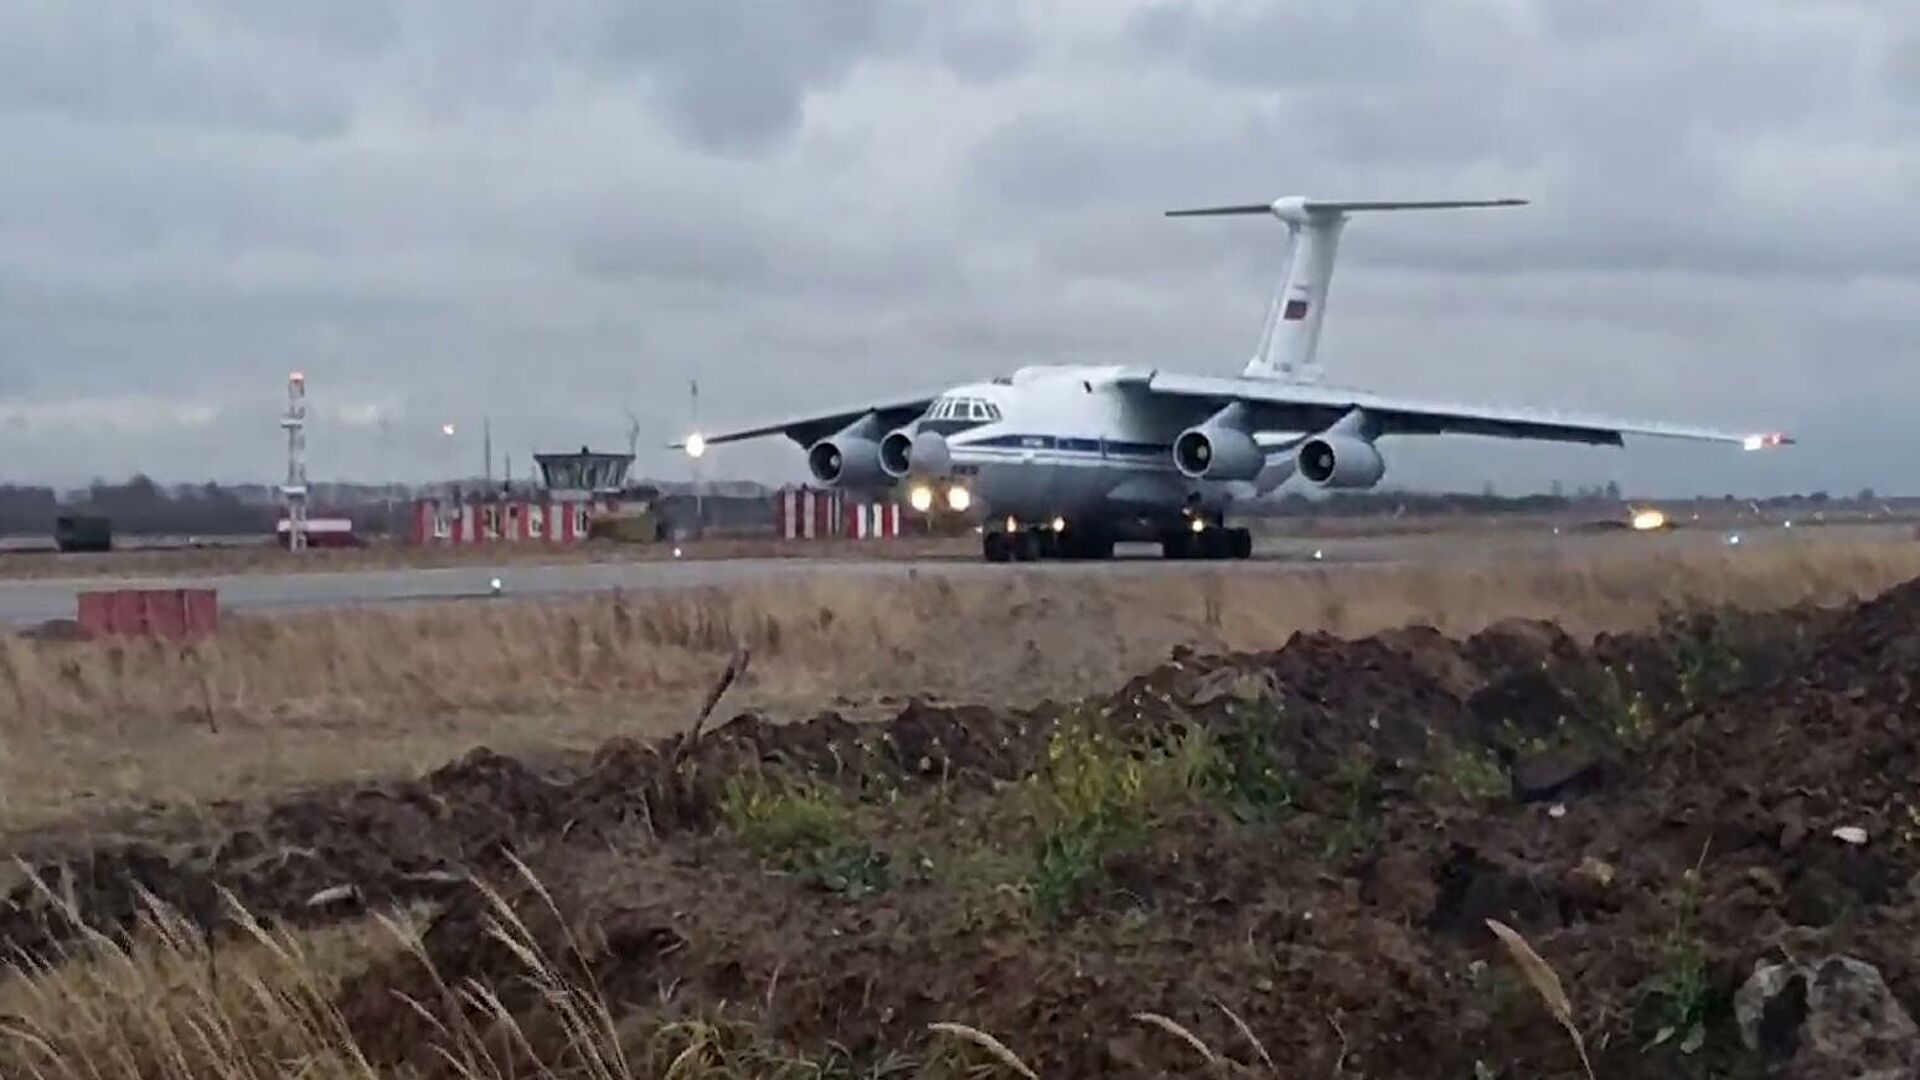 Ռուս խաղաղապահներ տեղափոխող հերթական ինքնաթիռները մեկնել են Ղարաբաղ